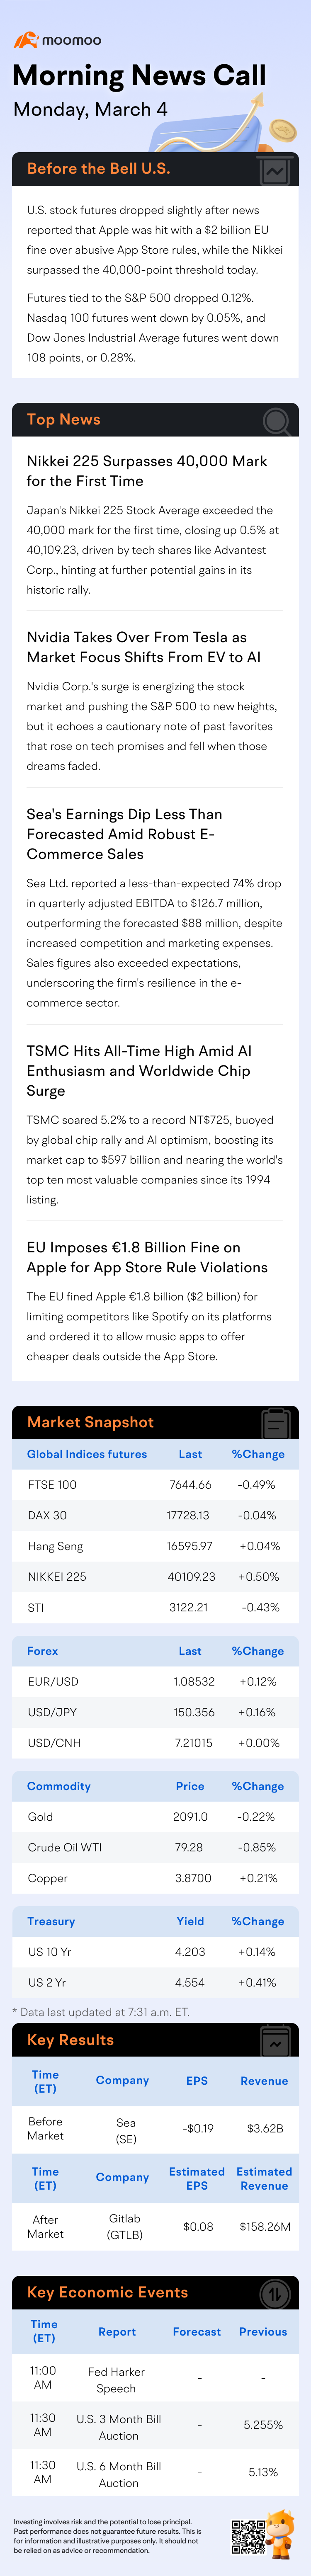 アップルが20億ユーロのEU制裁金を課せられたと報じられた後、株式先物はわずかに下落 | モーニングニュースコール